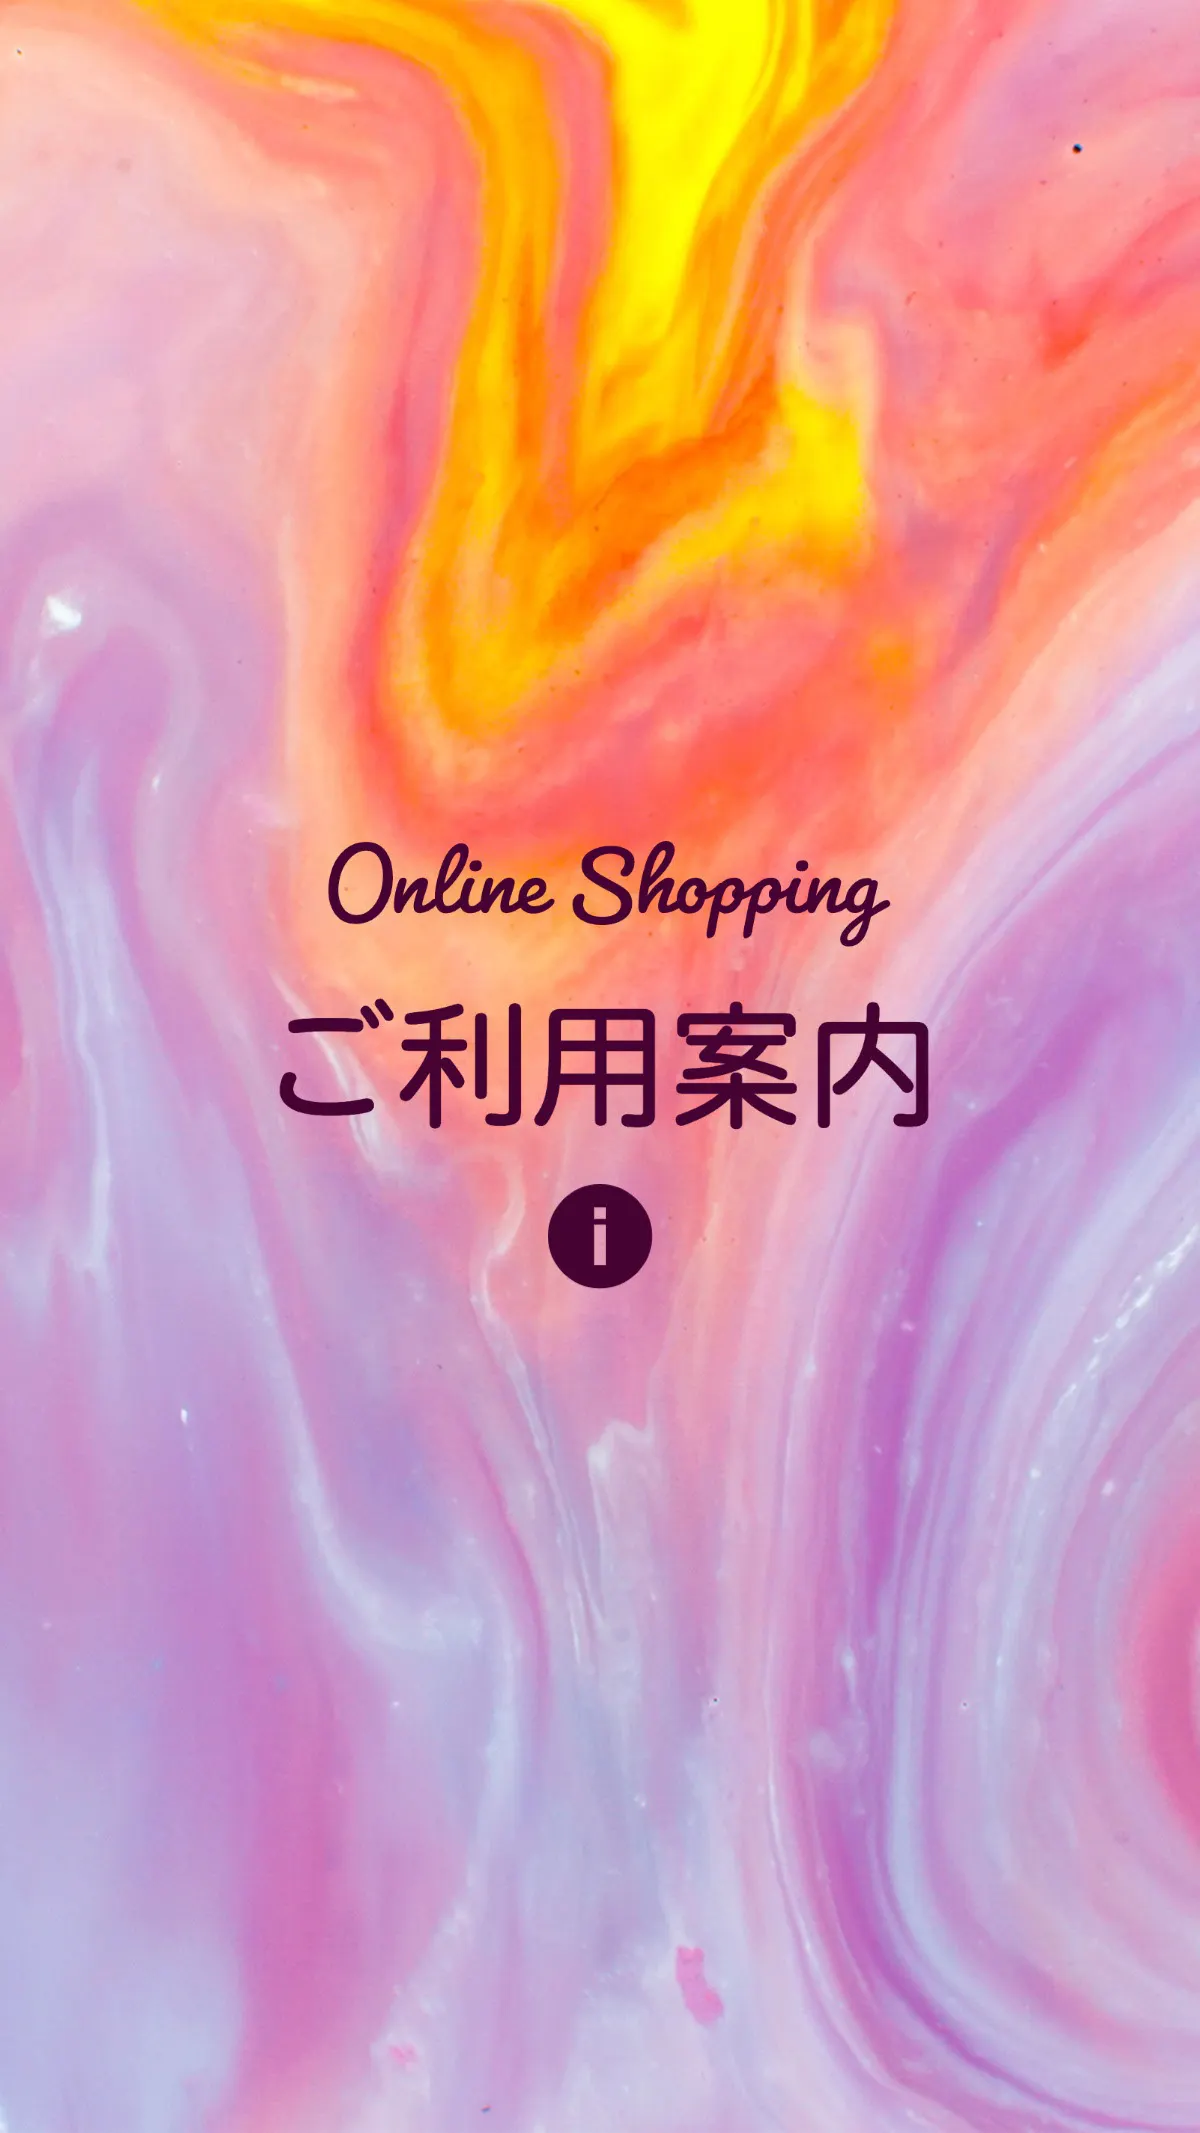 online shopping User guide Instagram Story Highlight Cover